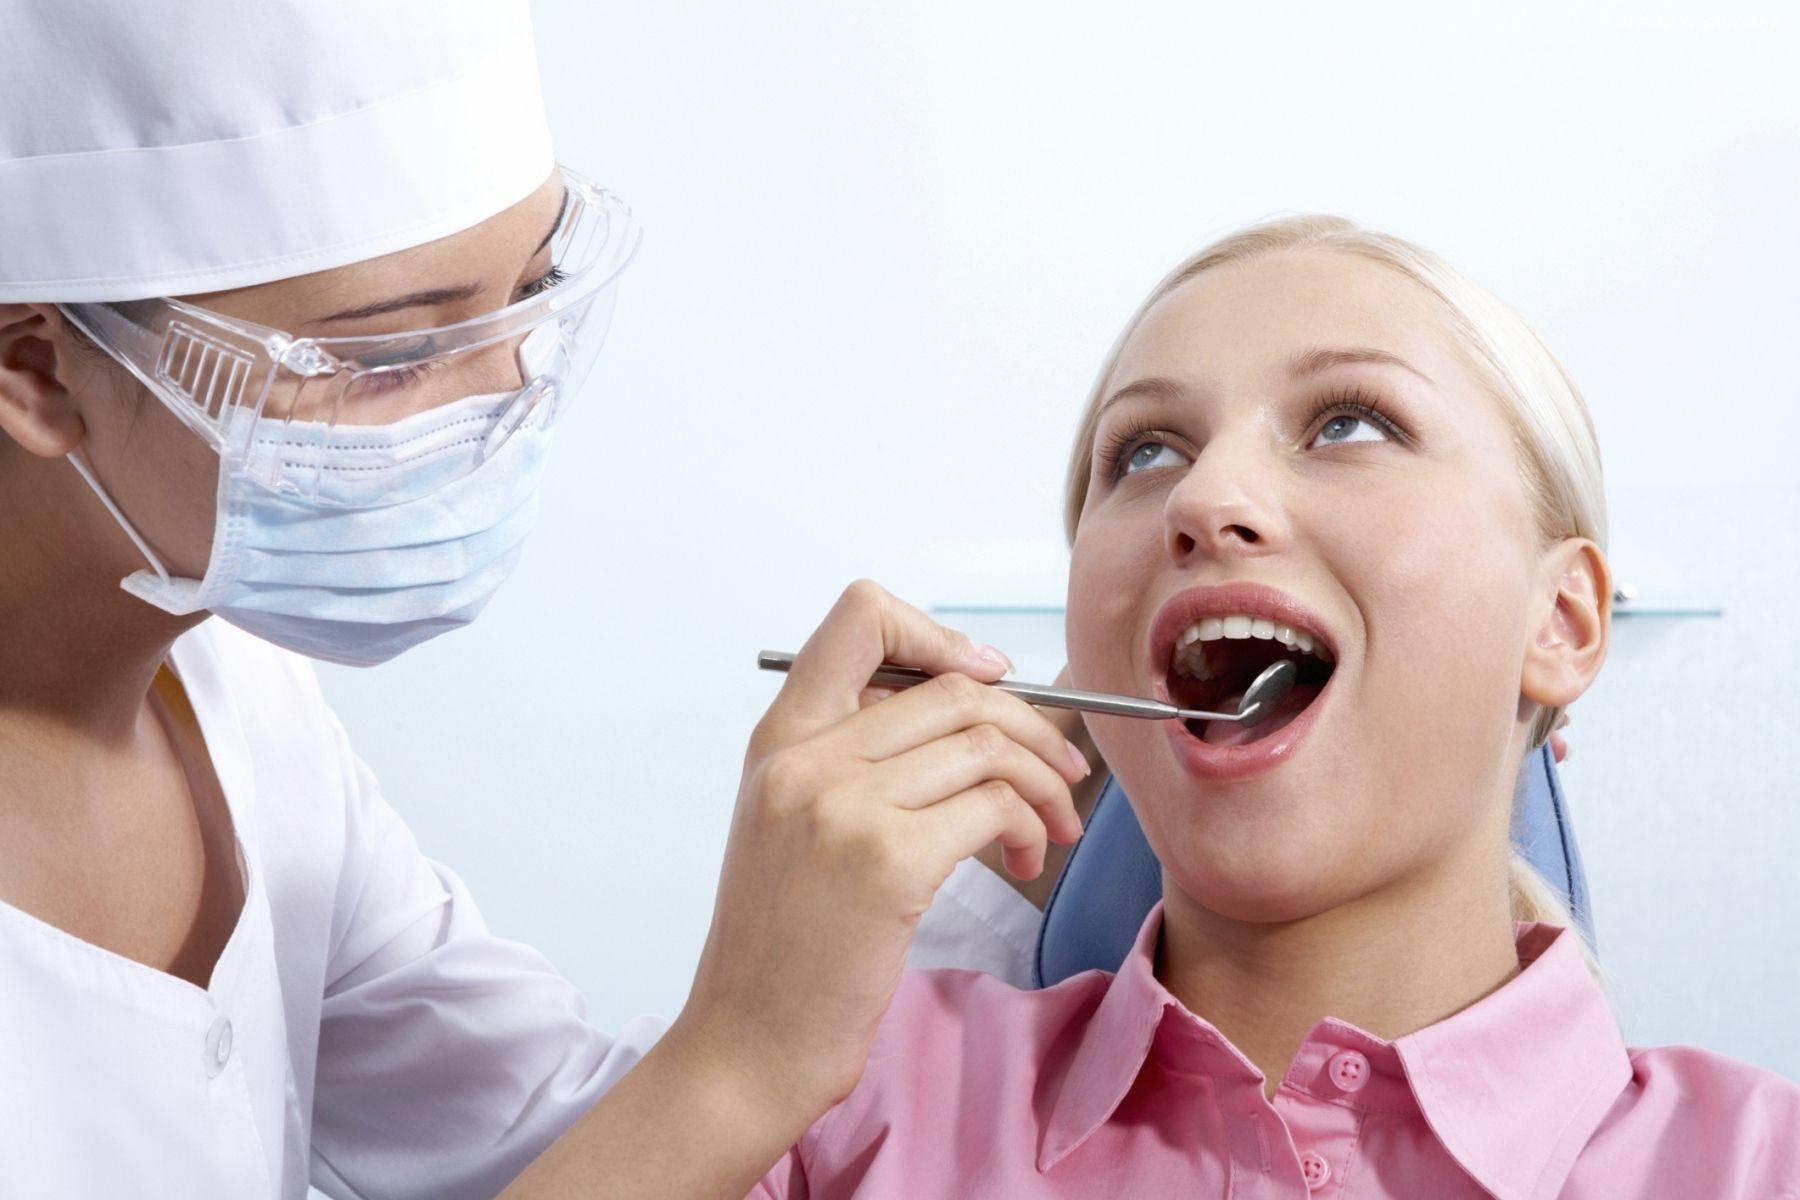 Zahnarztverwendet Spiegelstange Am Patienten. Wallpaper